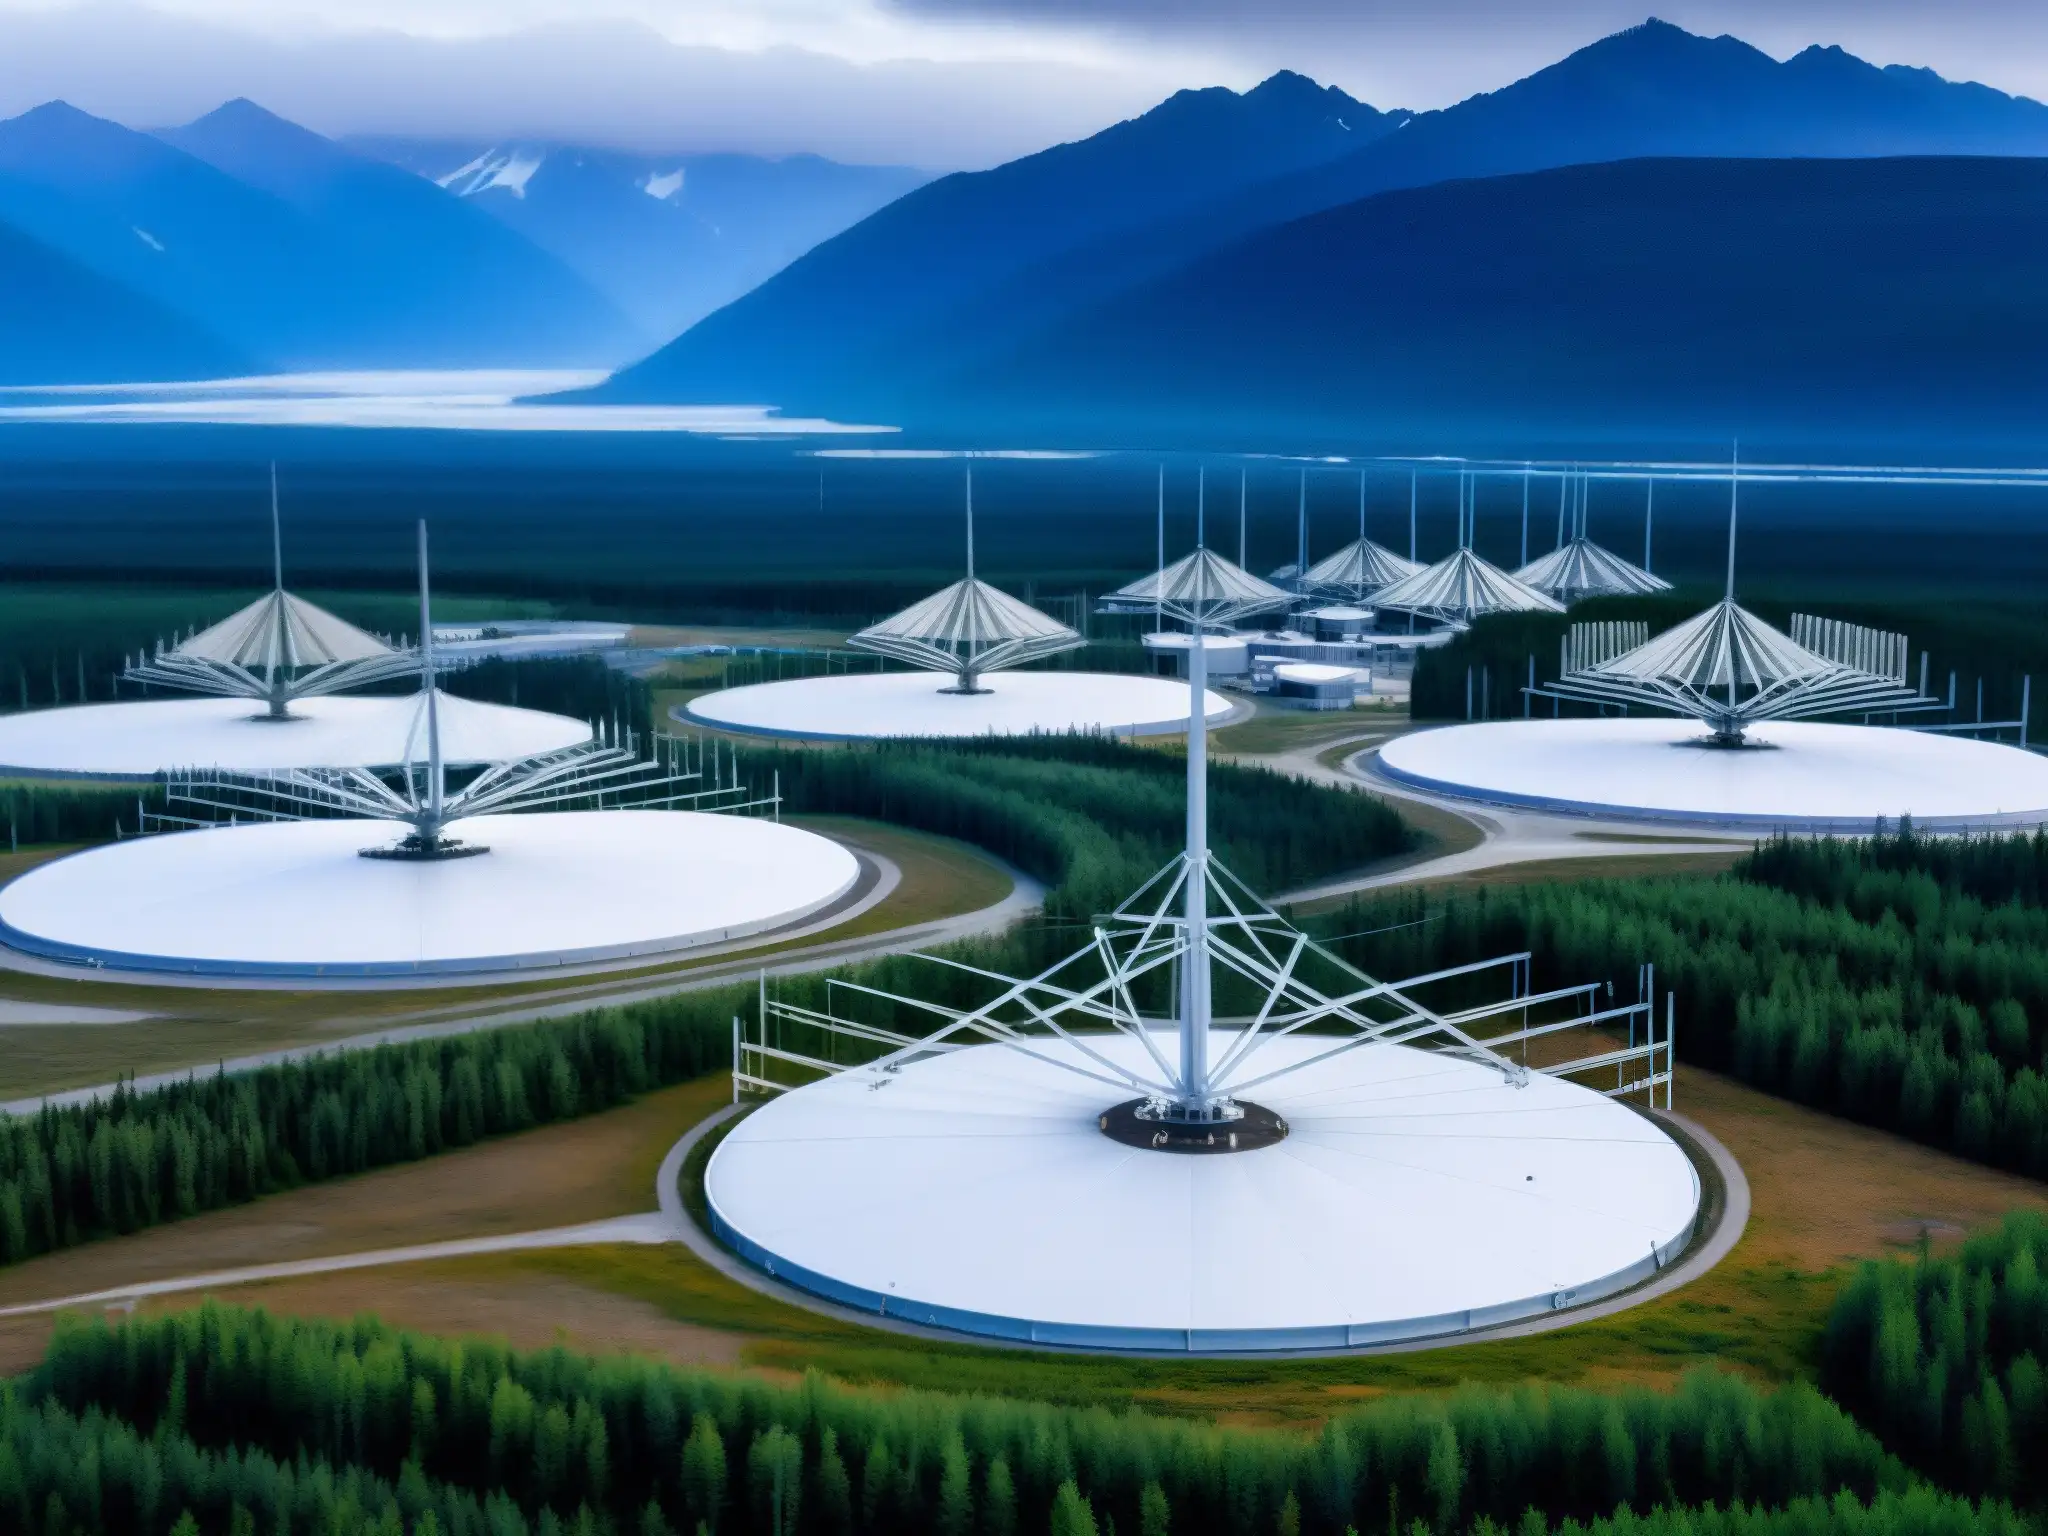 Vista detallada del complejo de antenas HAARP en Gakona, Alaska, destacando su escala y complejidad tecnológica